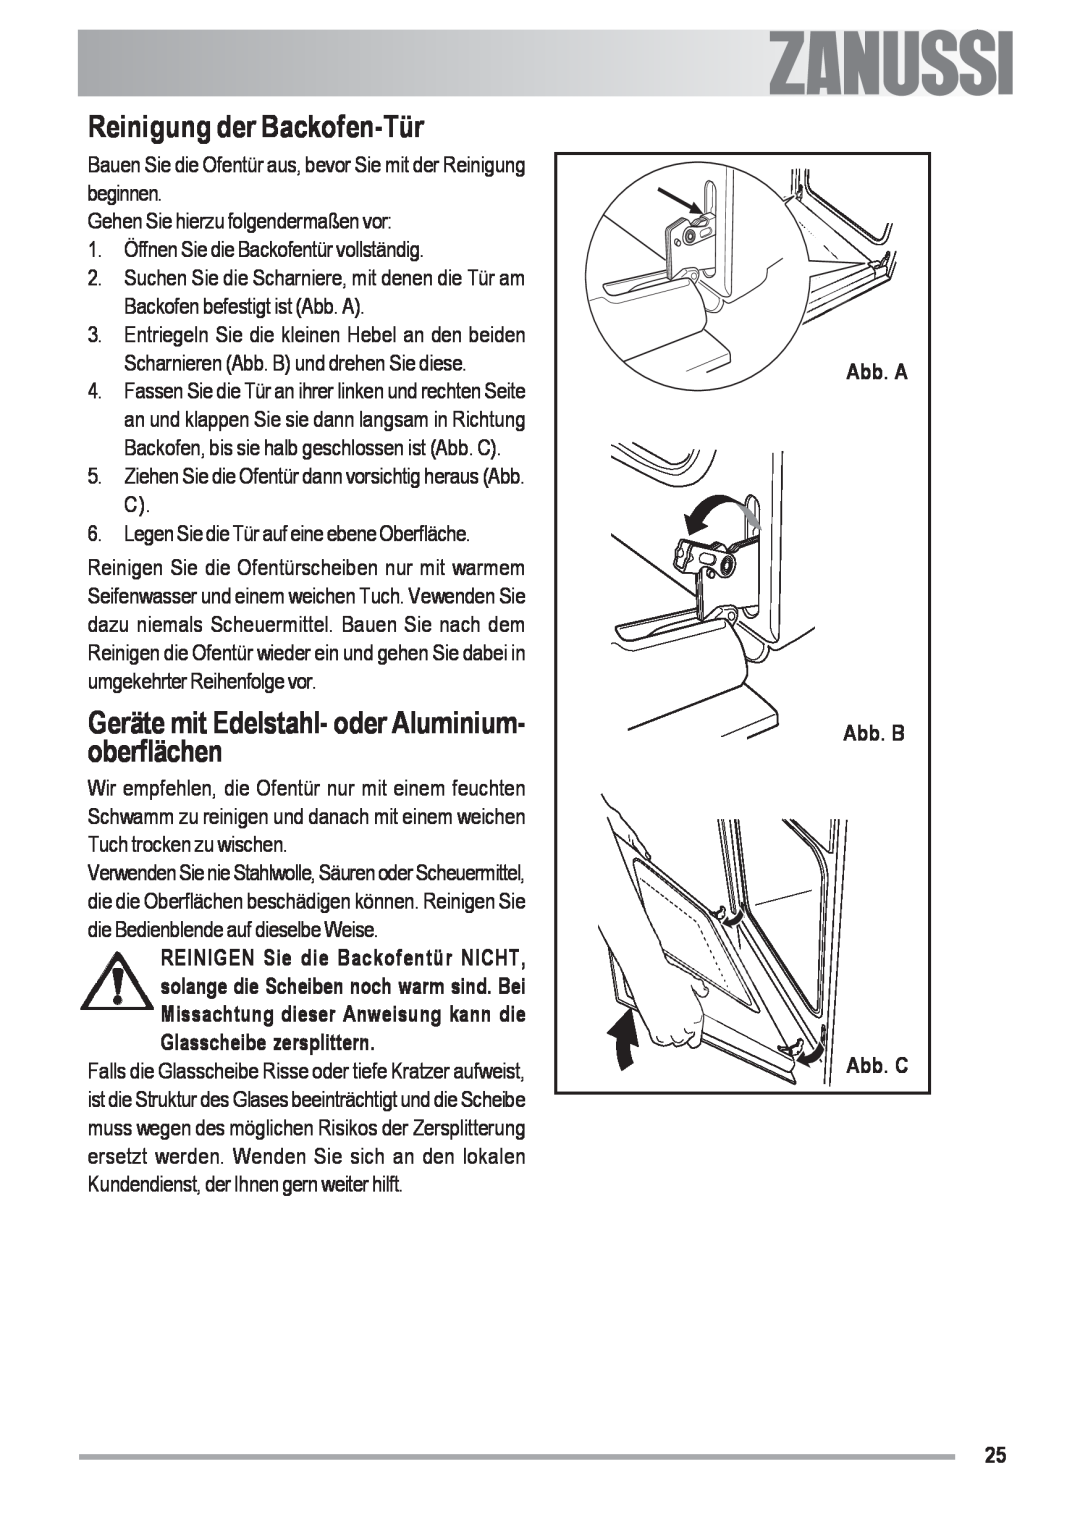 Zanussi ZOU 592 user manual Reinigung der Backofen-Tür, Geräte mit Edelstahl- oder Aluminium- oberflächen 